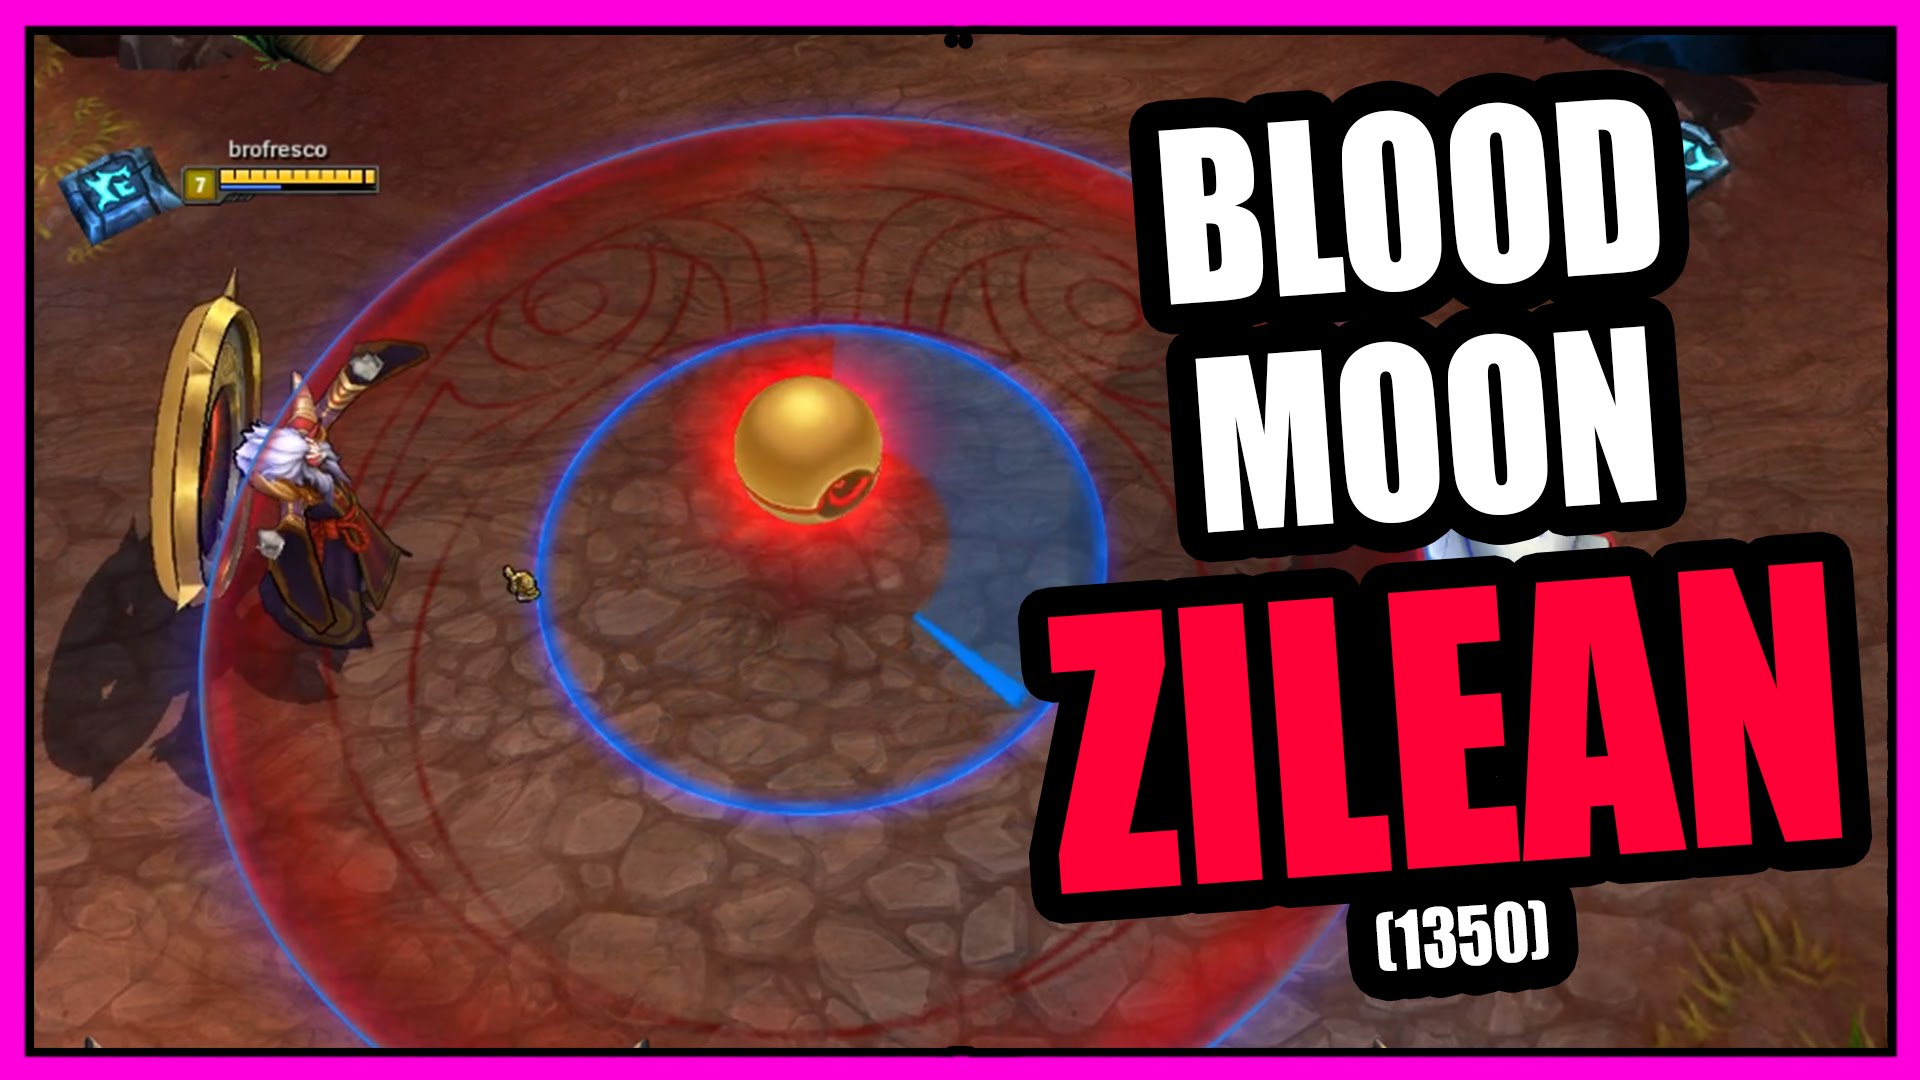 Blood Moon Zilean Skin Spotlight League of Legends - YouTube